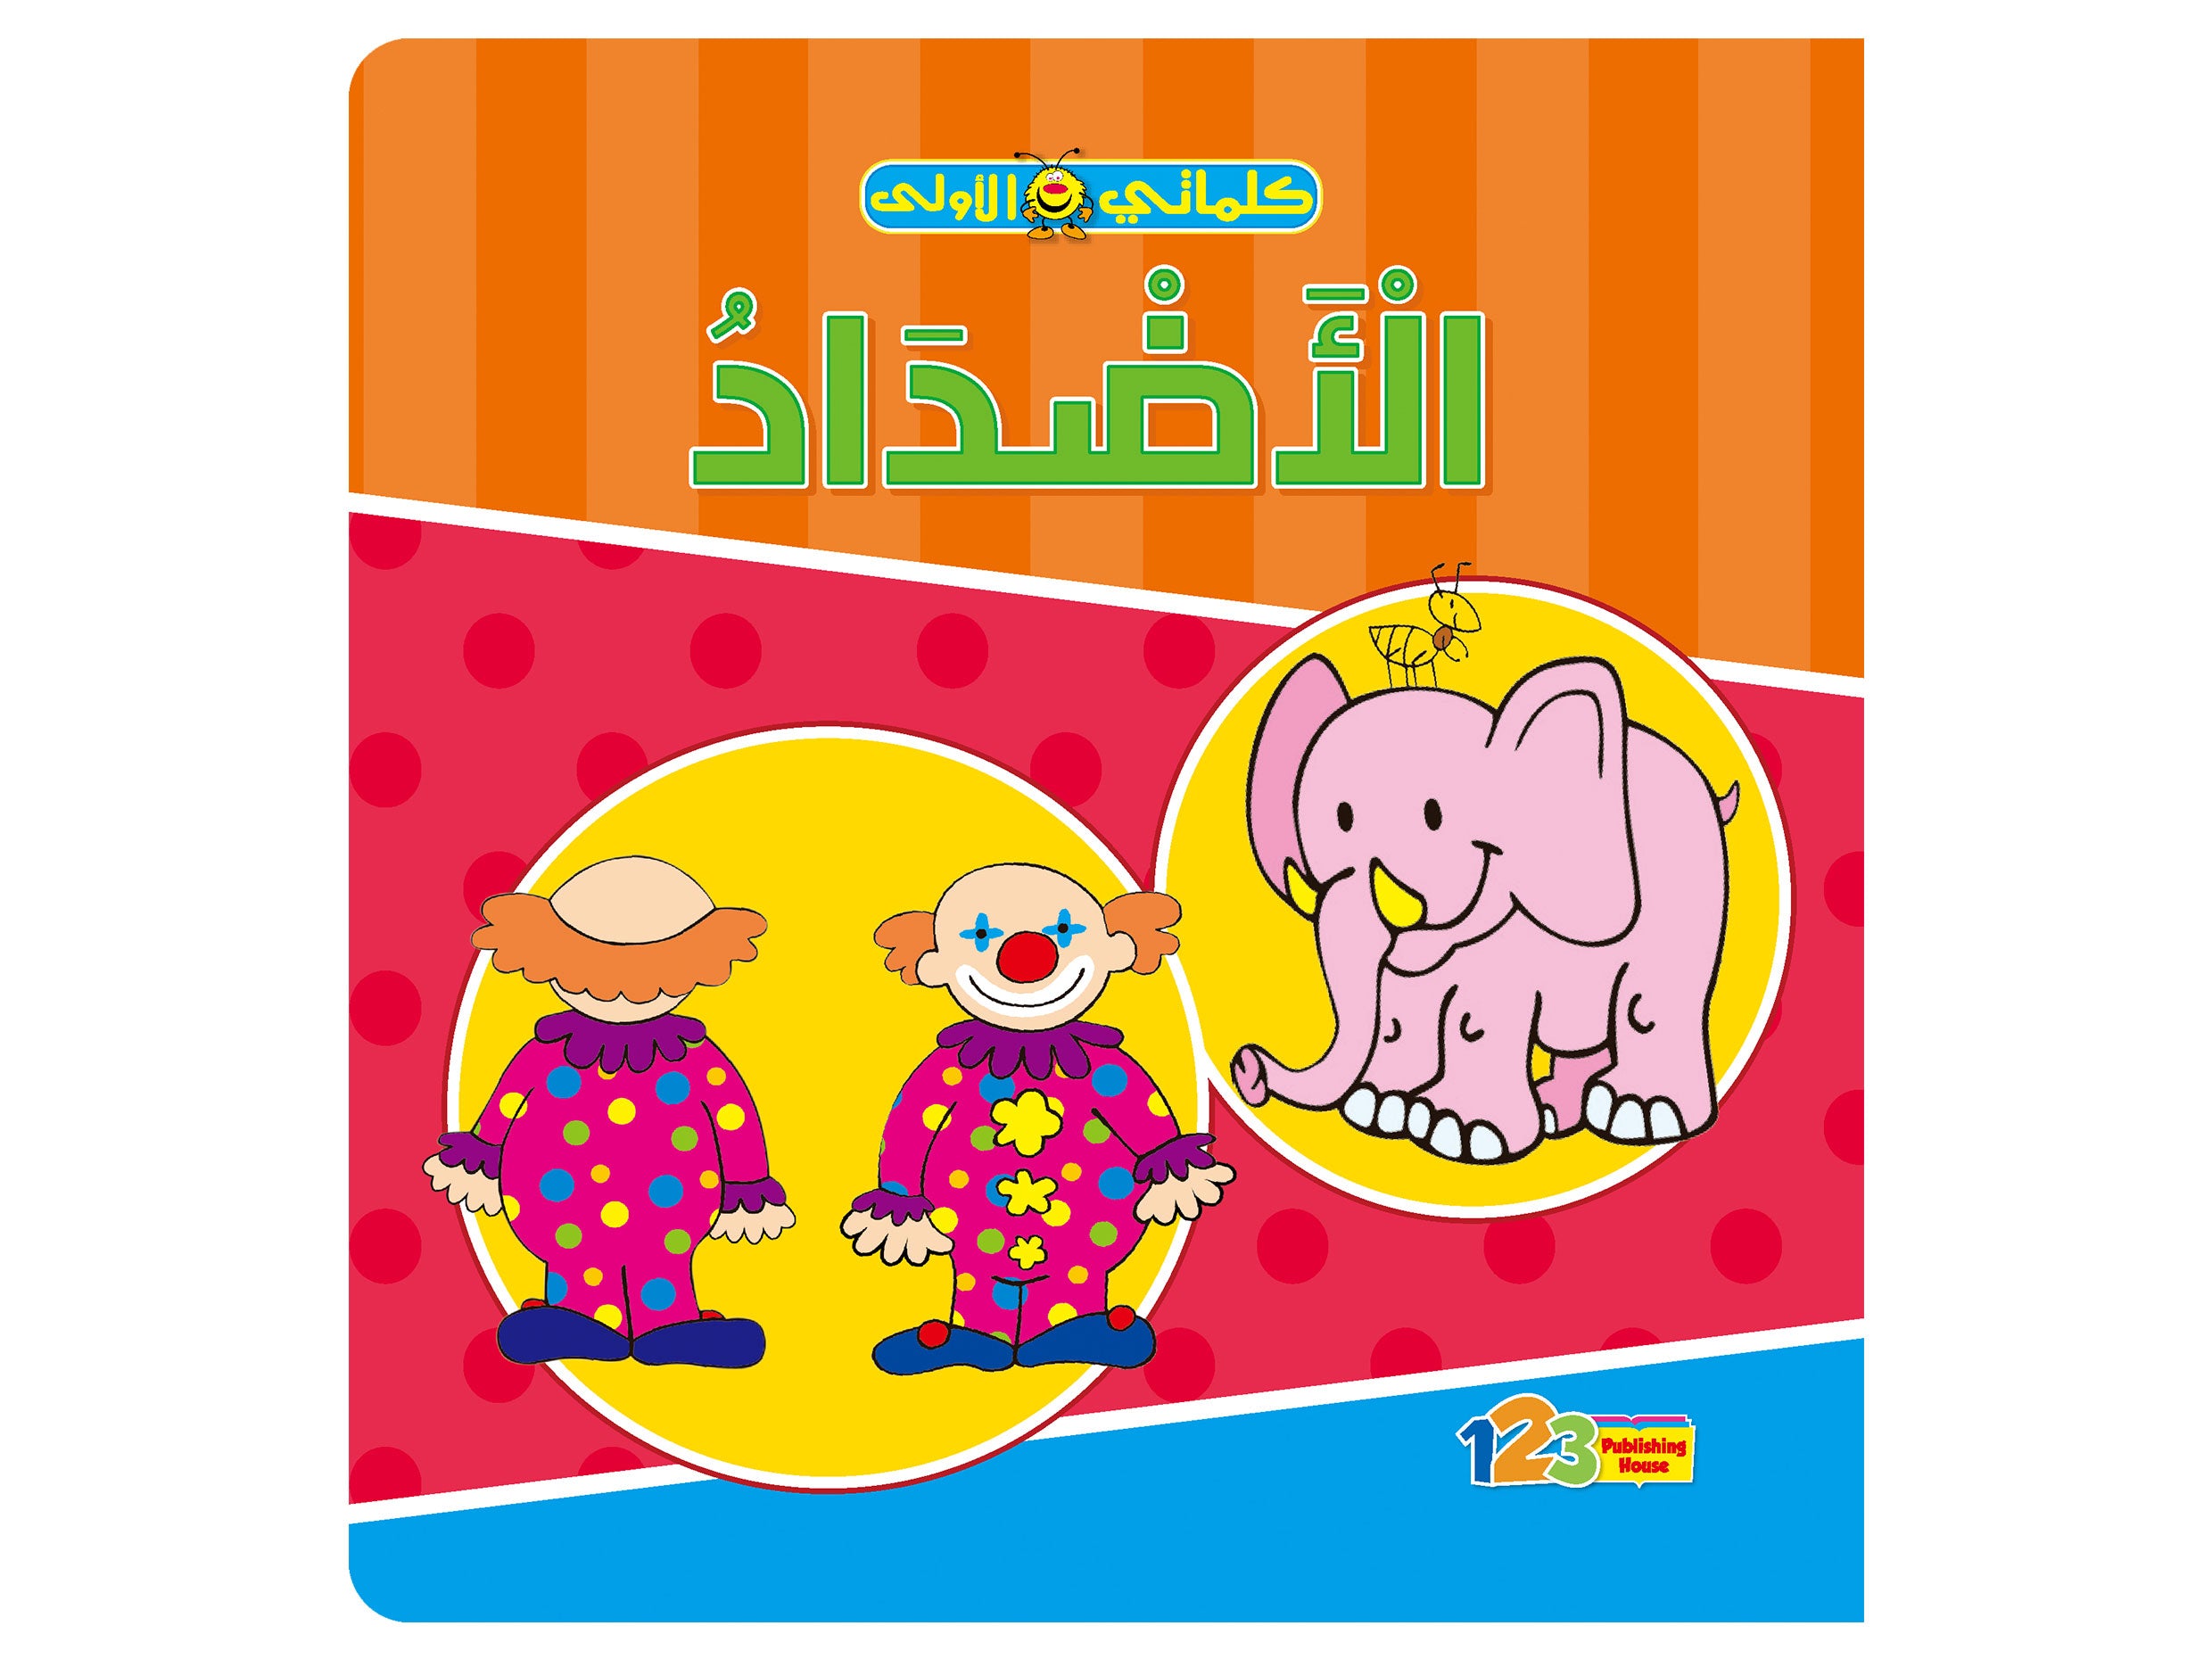  الأضداد - كتاب تعليمي للأطفال باللغة العربية